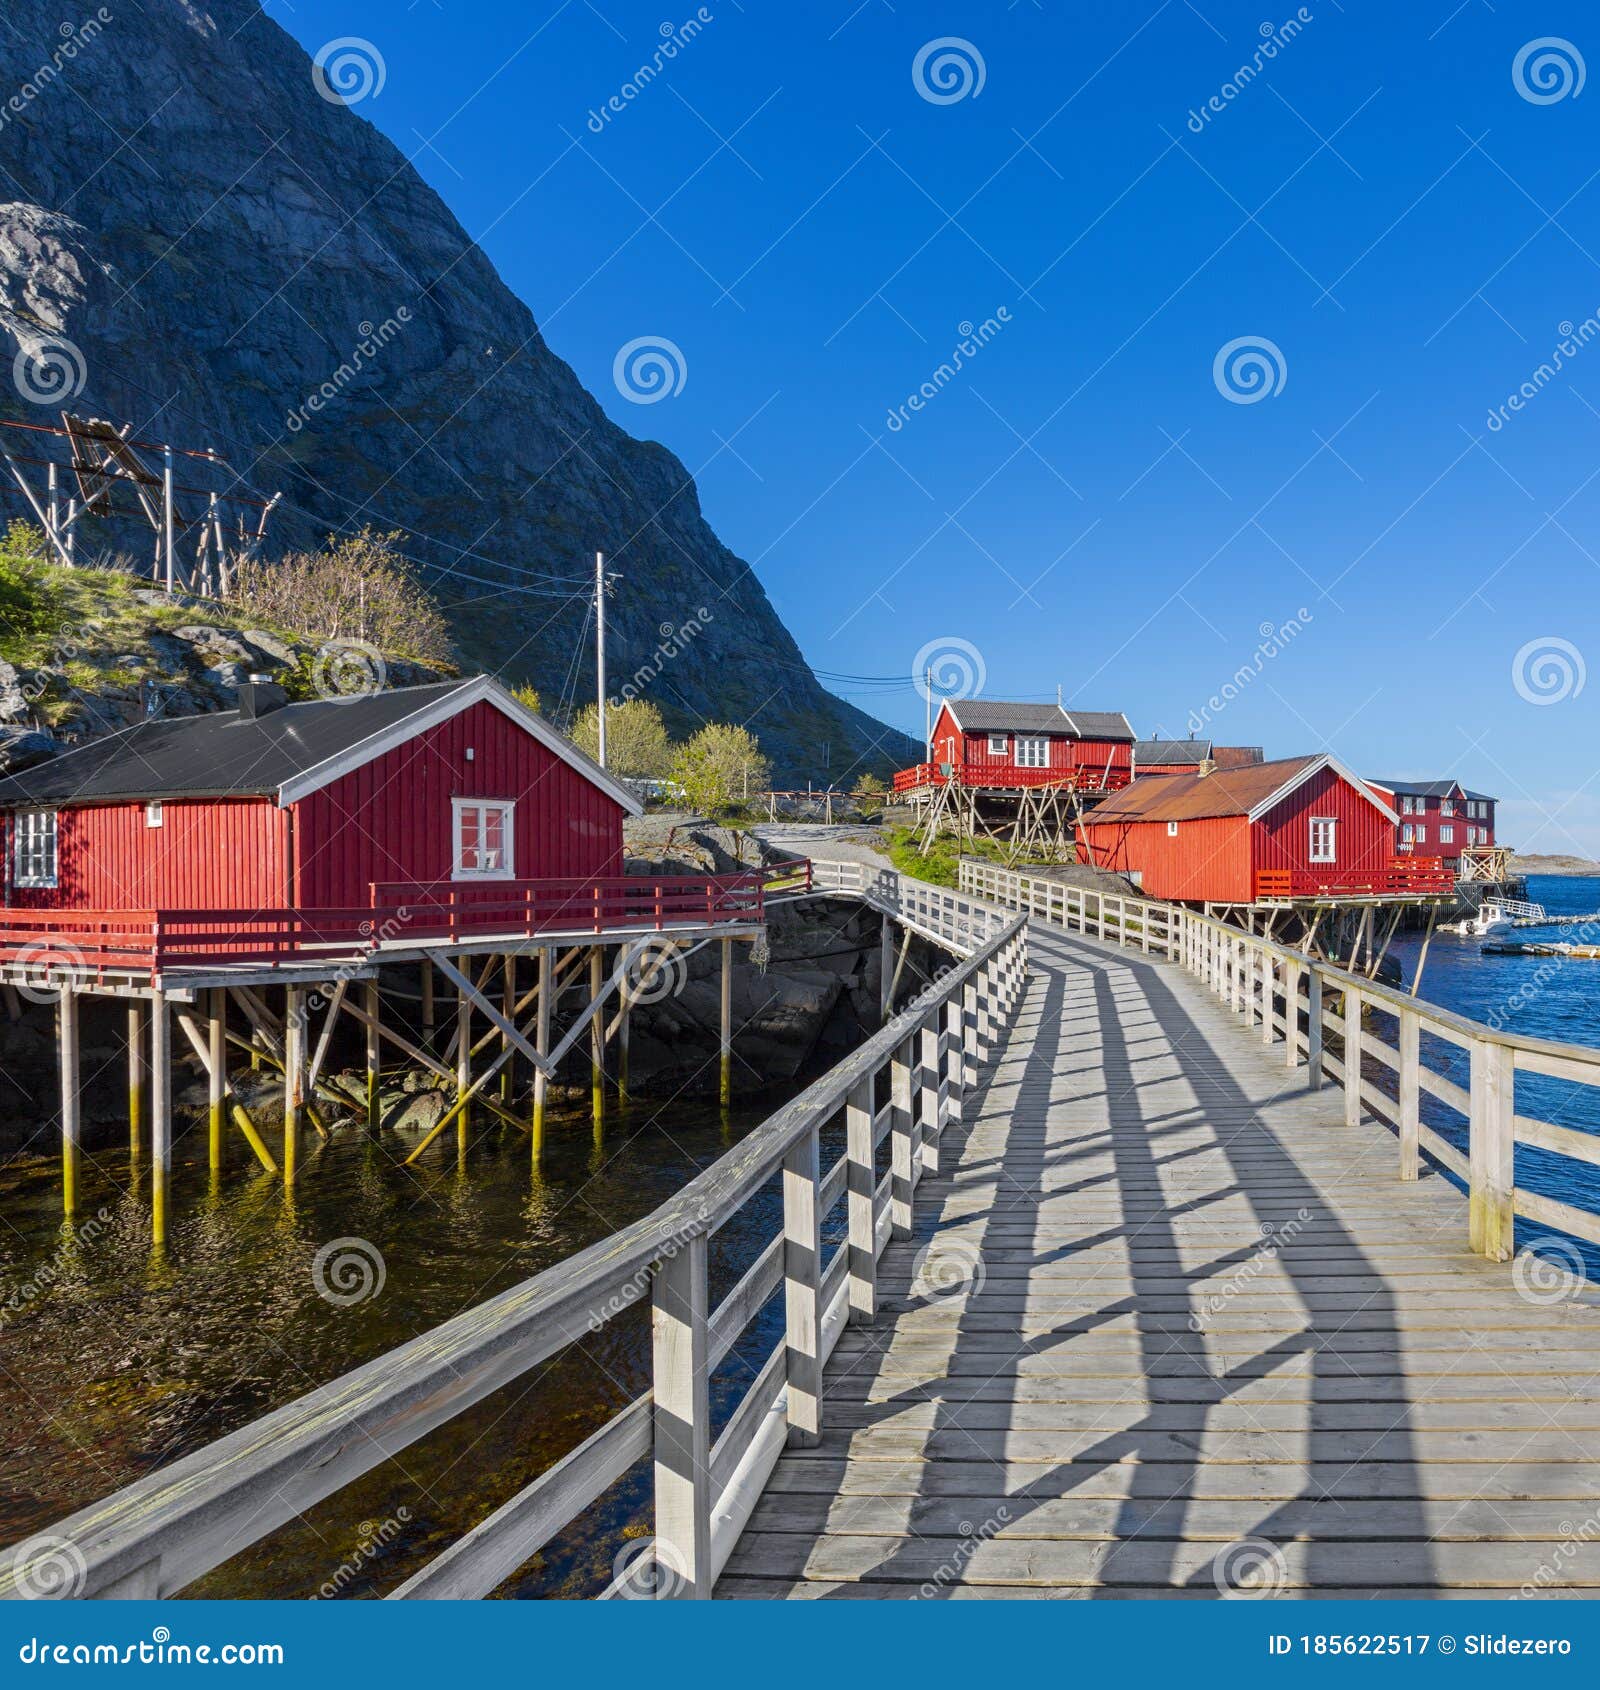 o village, moskenes, red norwegian rorbu, fishing huts on lofoten islands